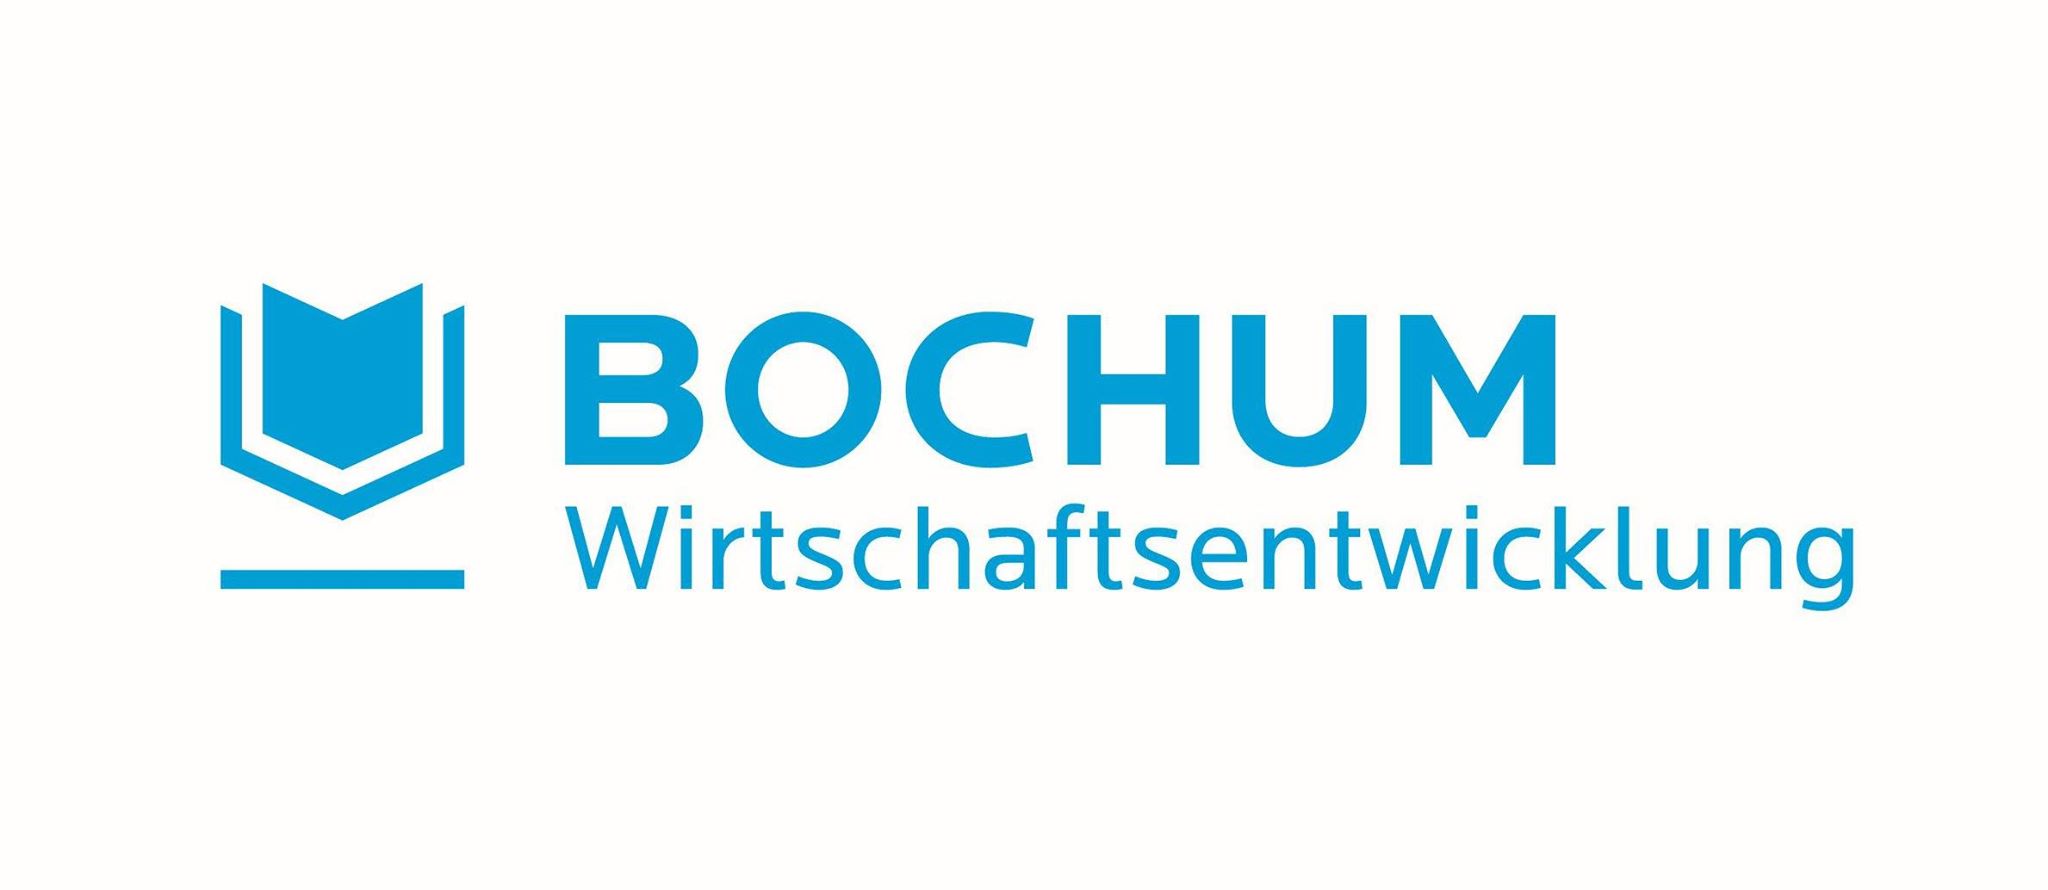 Bochum Wirtschaftsentwicklung